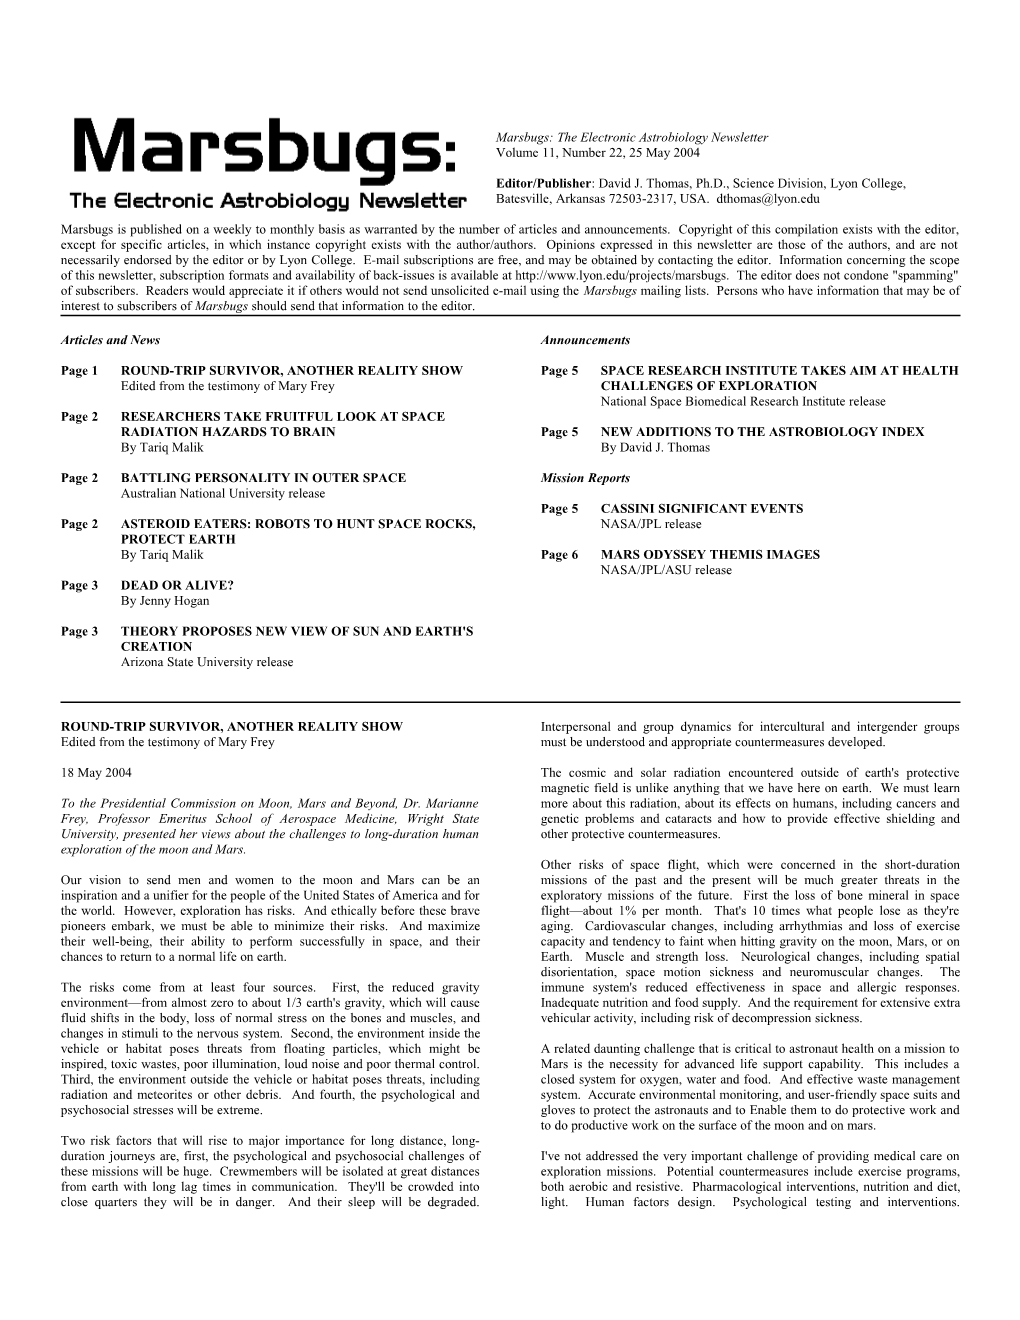 Marsbugs Vol. 11, No. 22